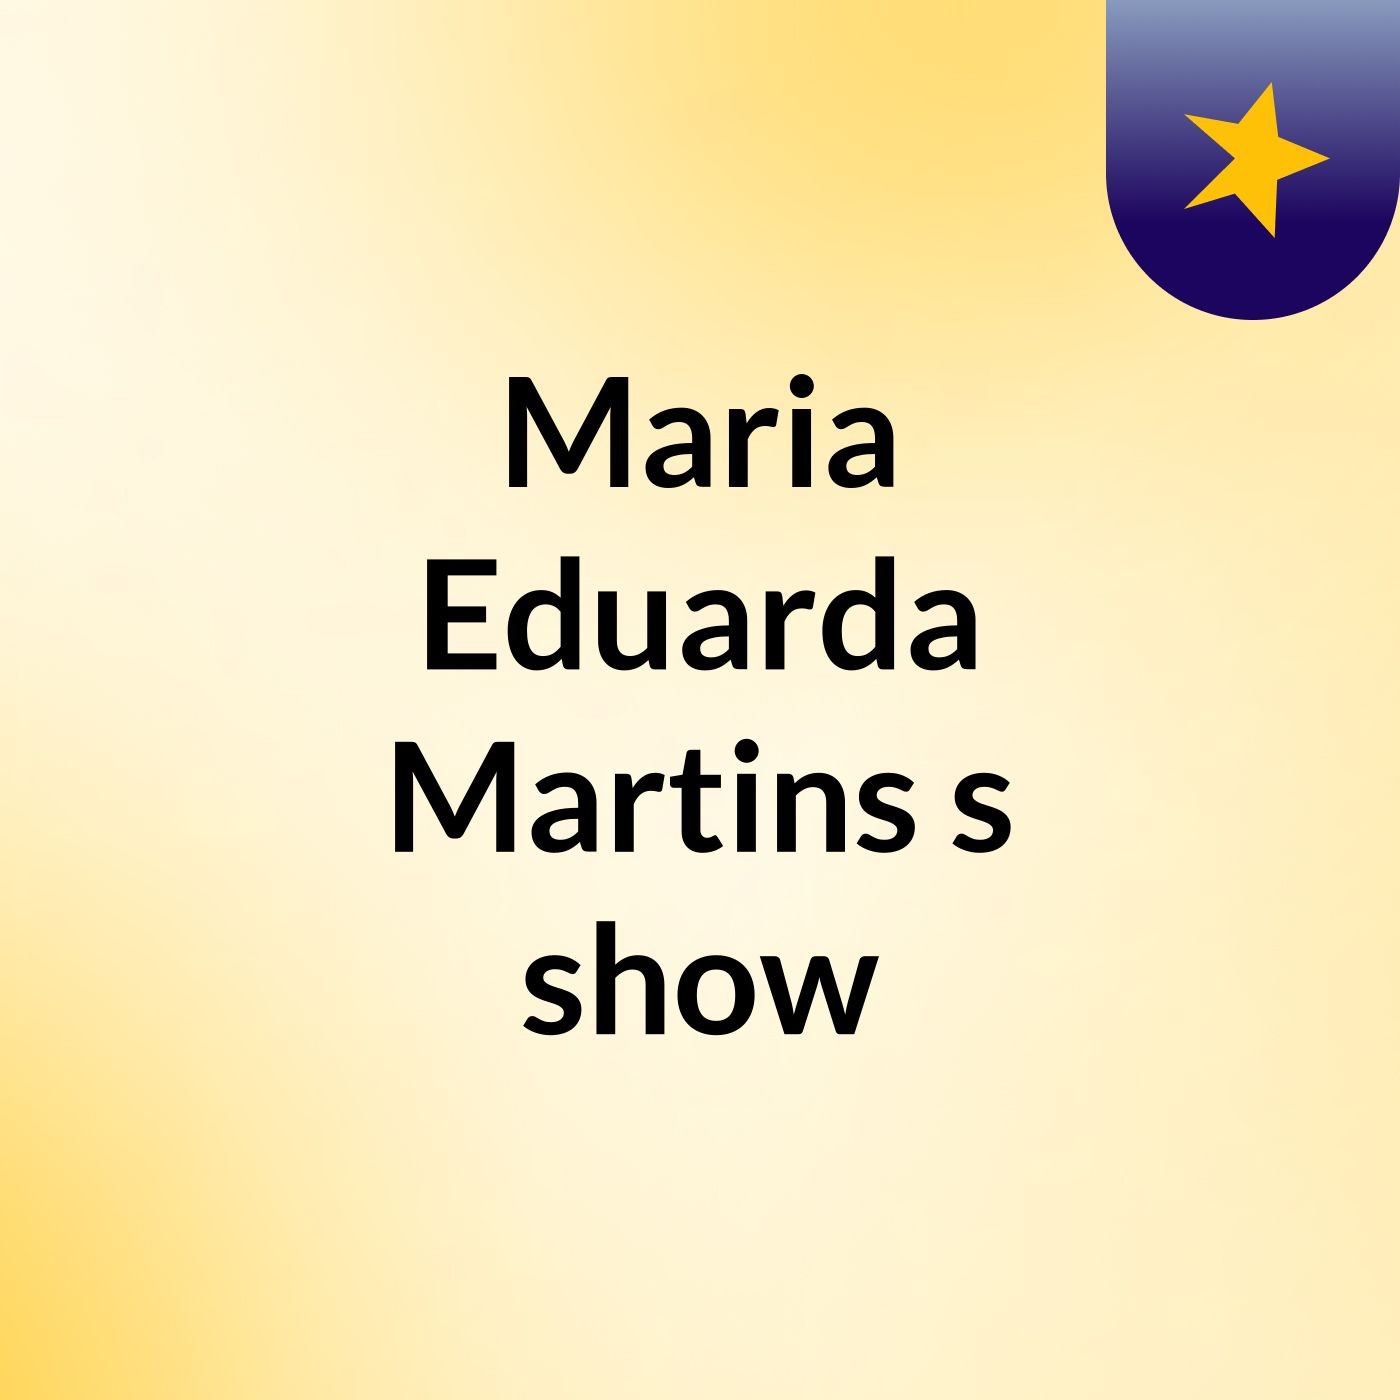 Maria Eduarda Martins's show